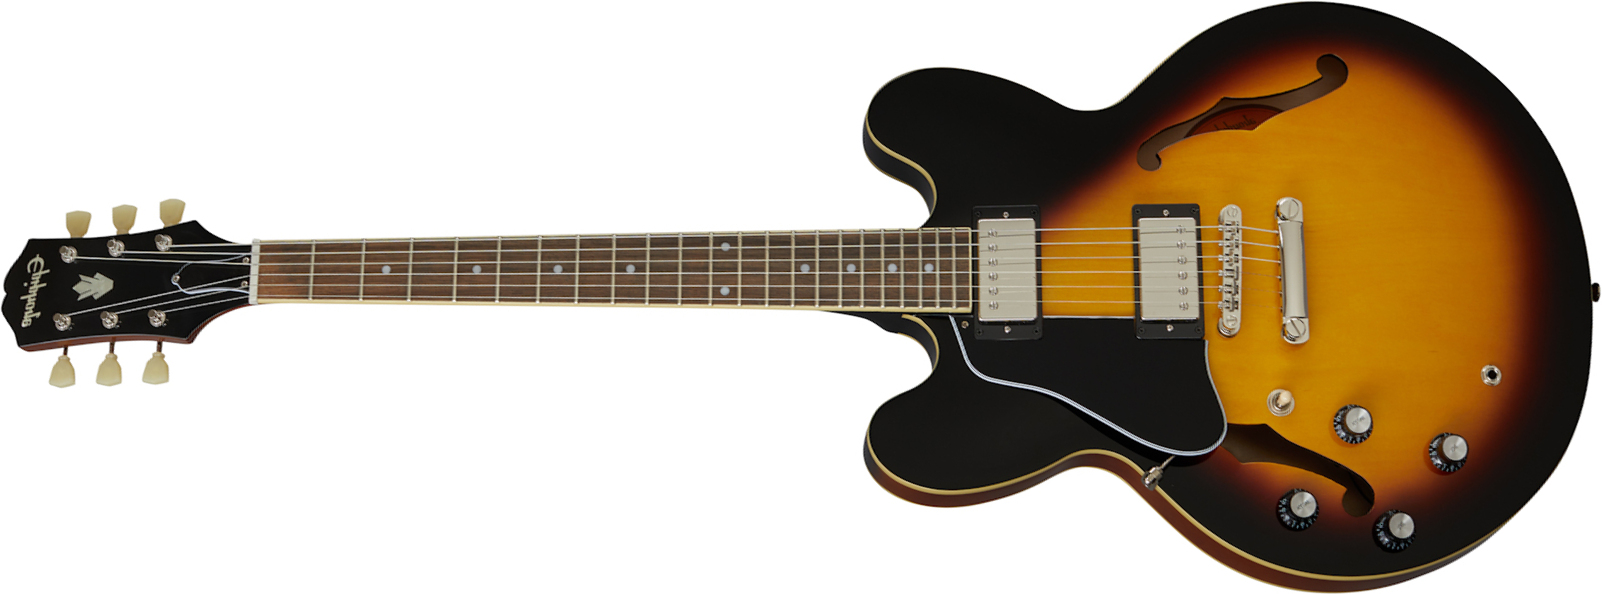 Epiphone Es-335 Lh Inspired By Gibson Original Gaucher 2h Ht Rw - Vintage Sunburst - Linkshandige elektrische gitaar - Main picture